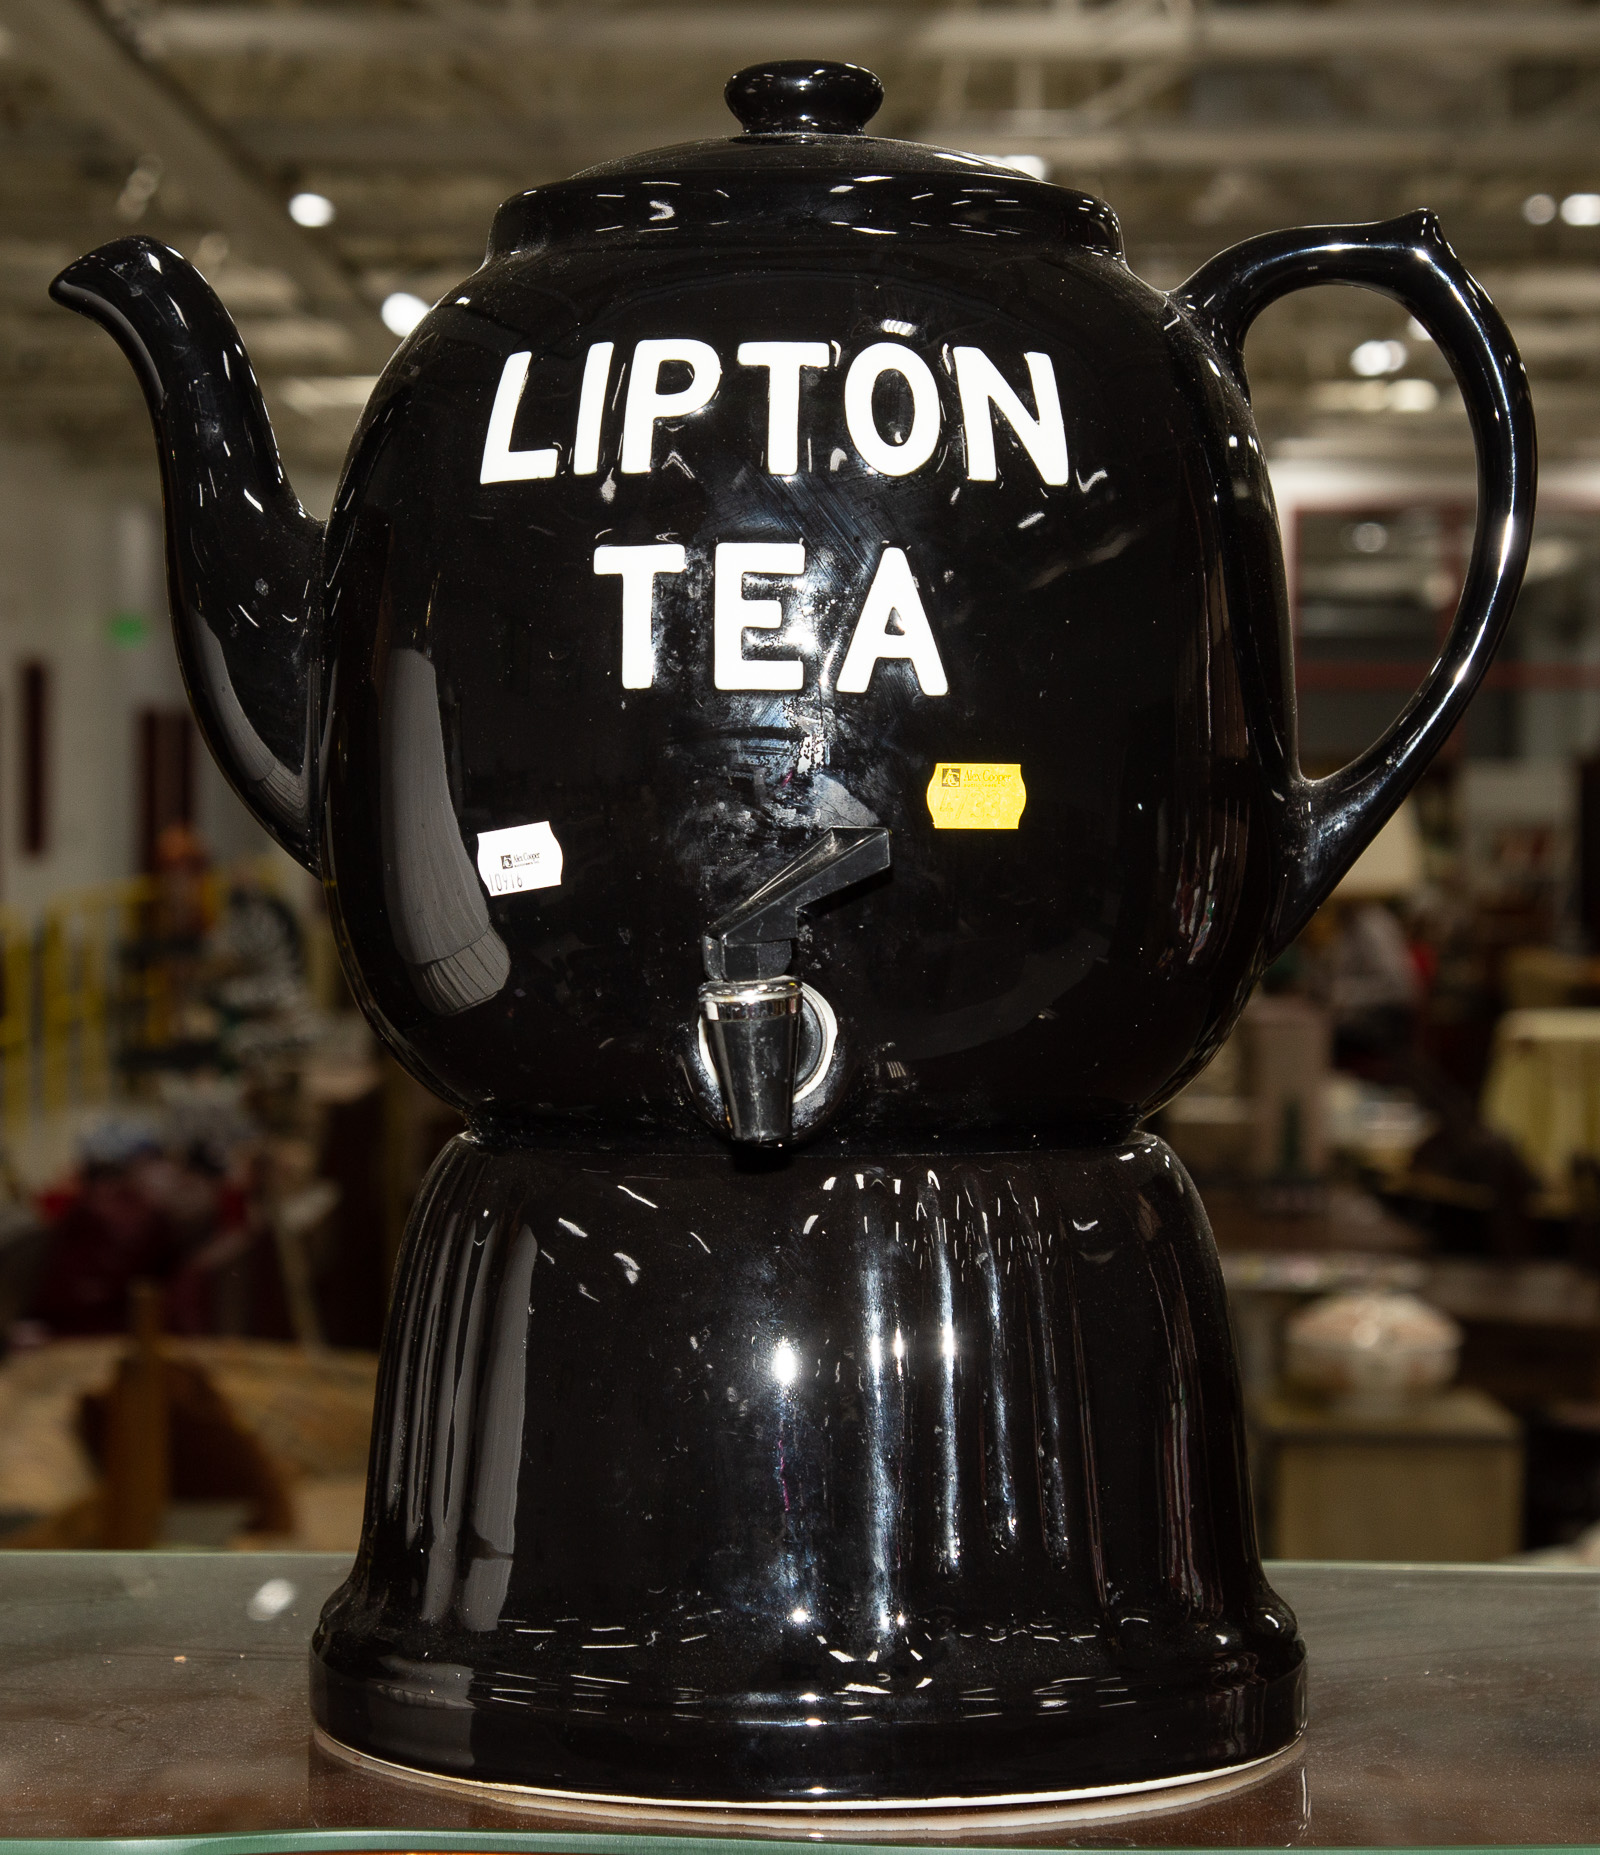 LIPTON TEA COUNTERTOP PORCELAIN